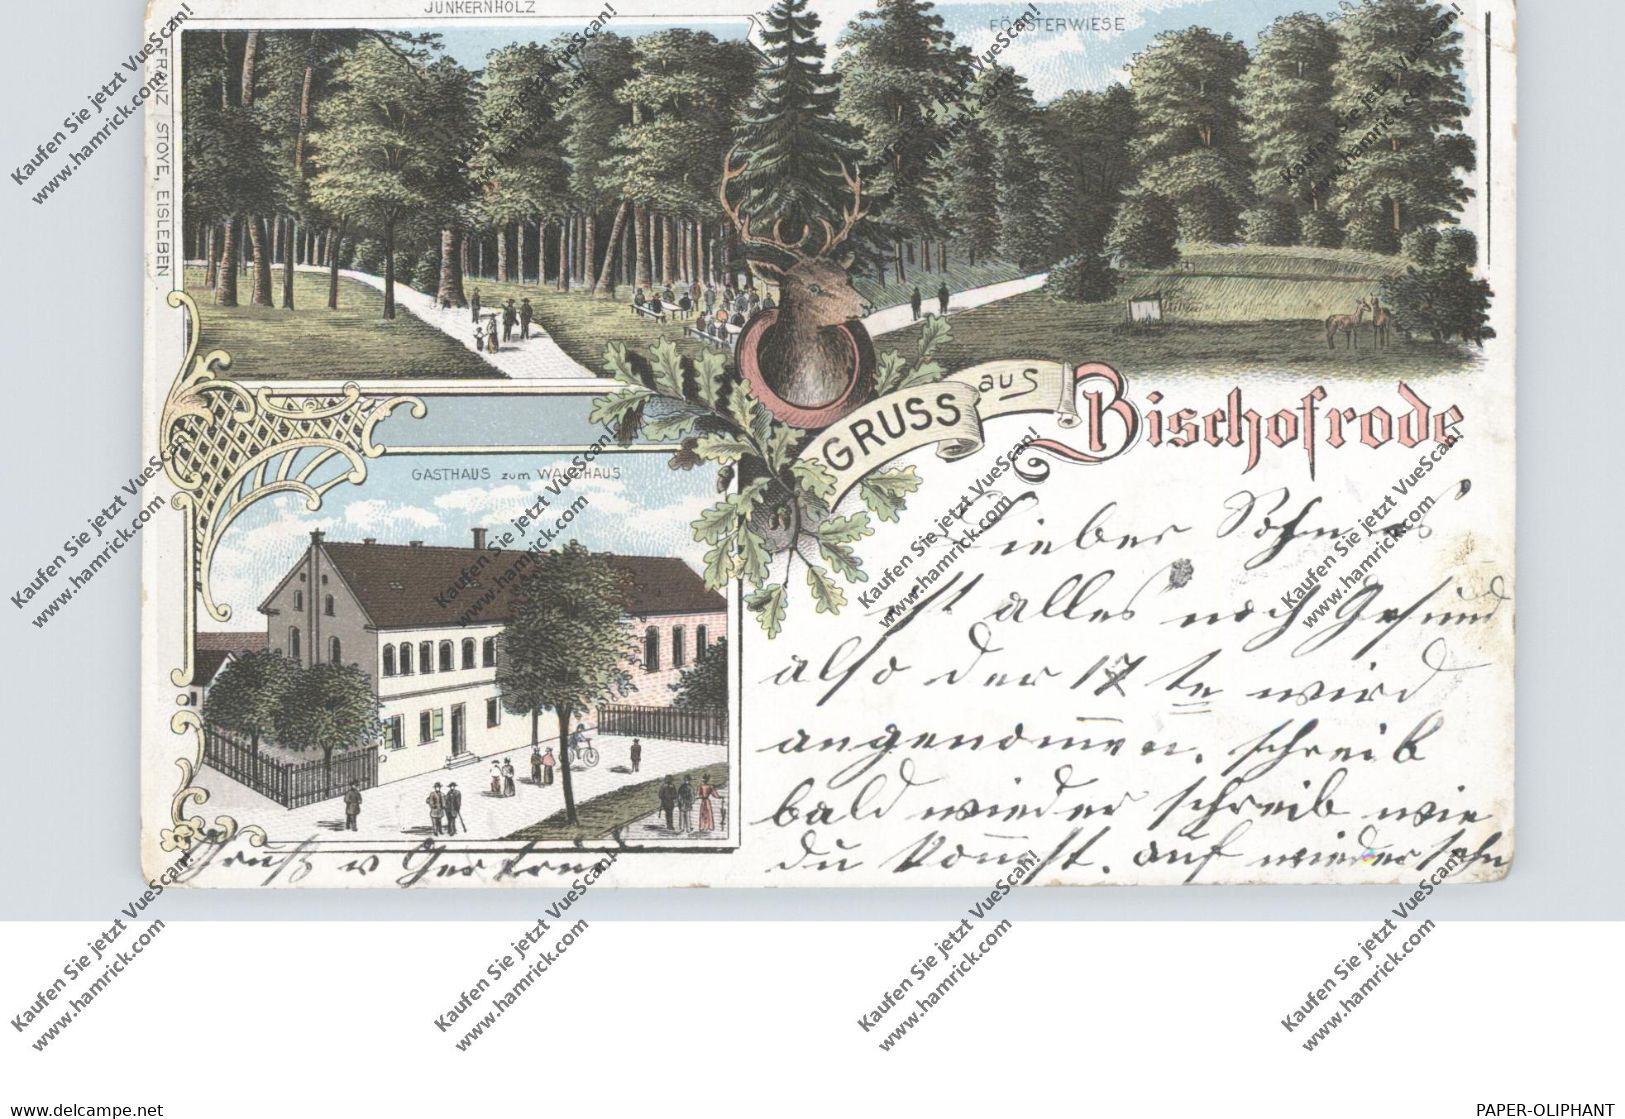 0-4250 EISLEBEN - BISCHOFRODE, Lithographie, Gasthaus Zum Waldhaus, Försterwiese - Eisleben